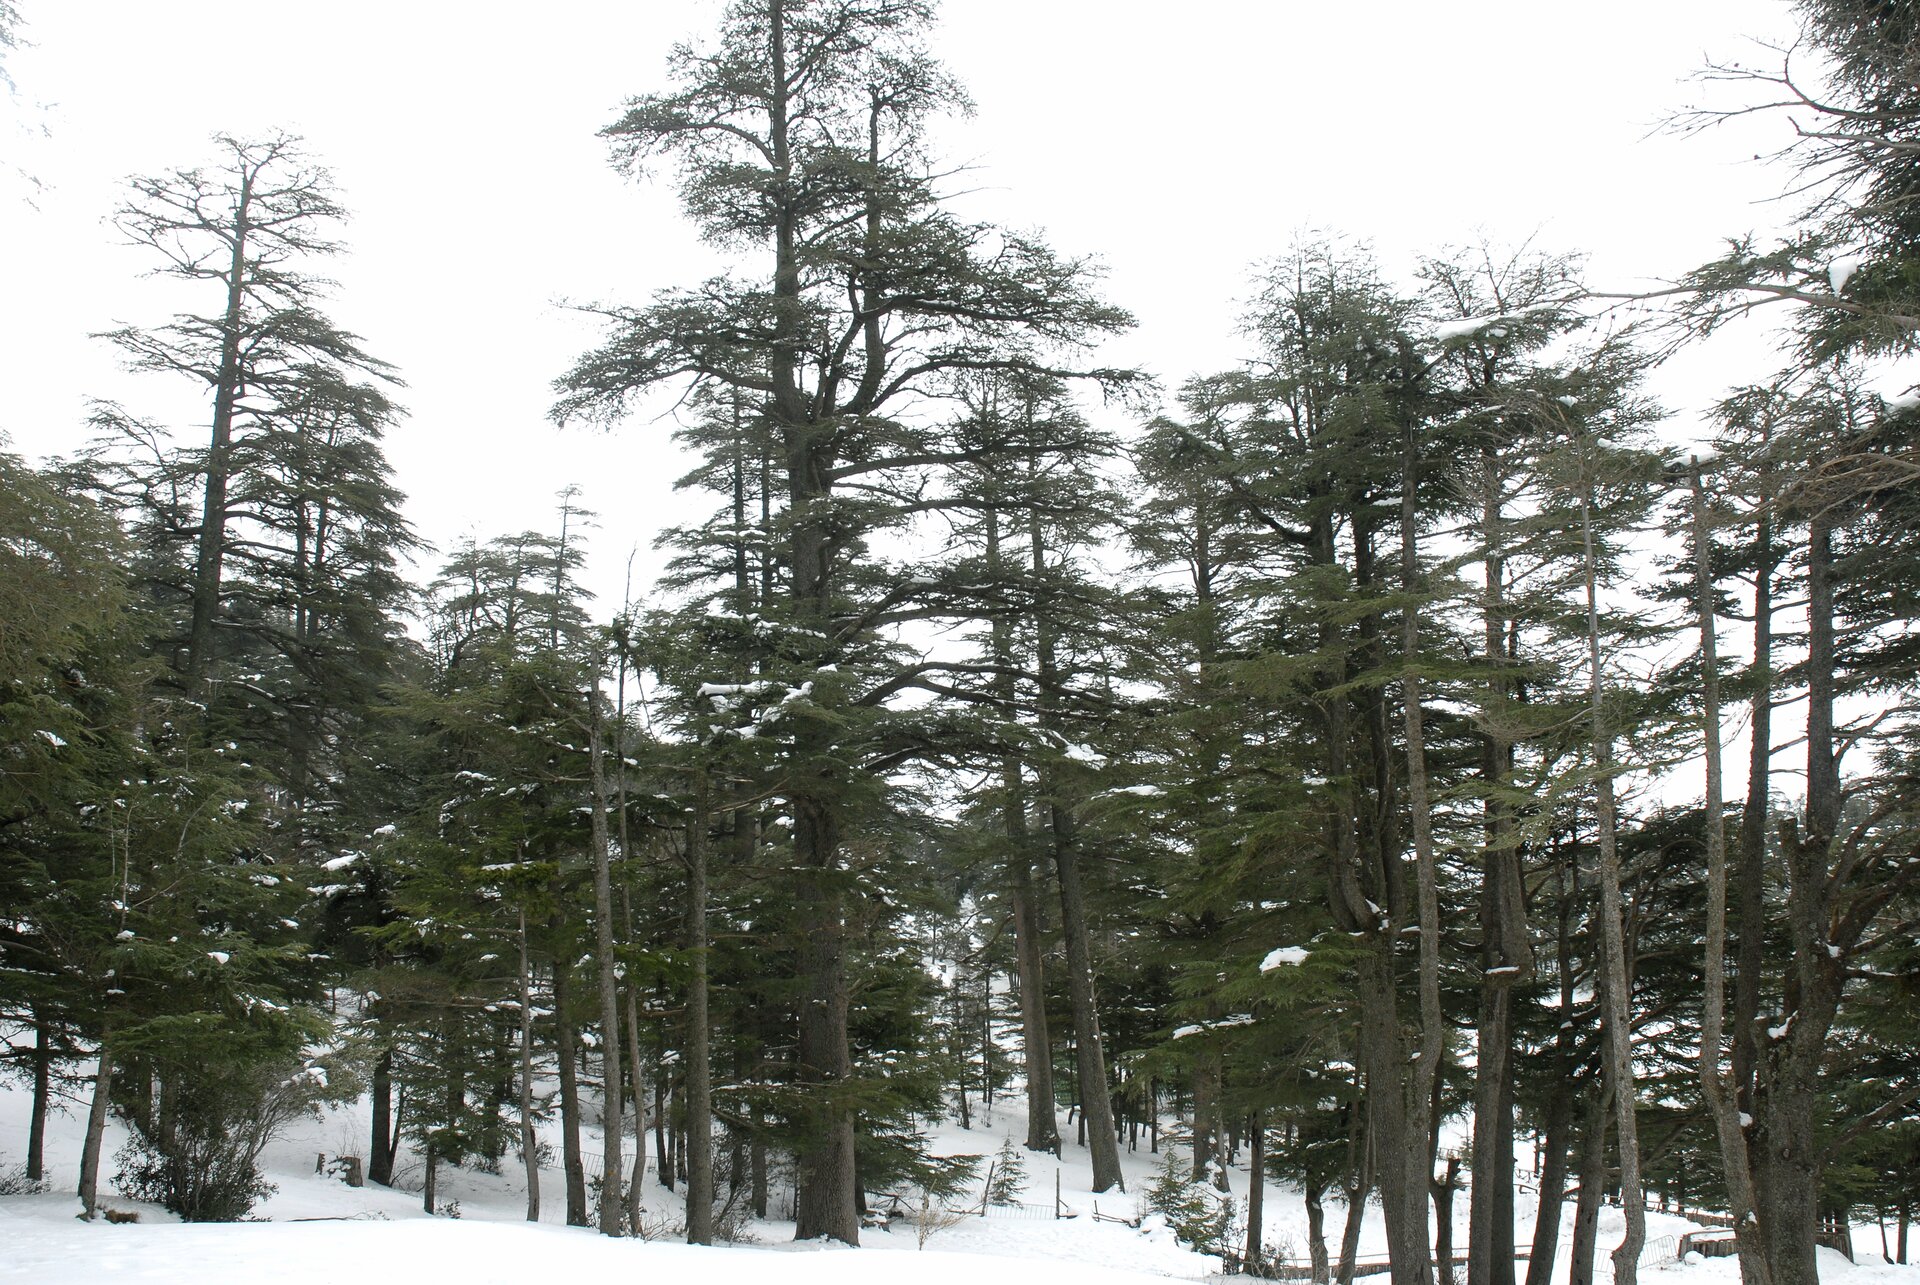 Zdjęcie przedstawia las iglasty na zboczu ośnieżonego wzniesienia. Drzewa rosną dość gęsto. Część pozbawiona igieł. 